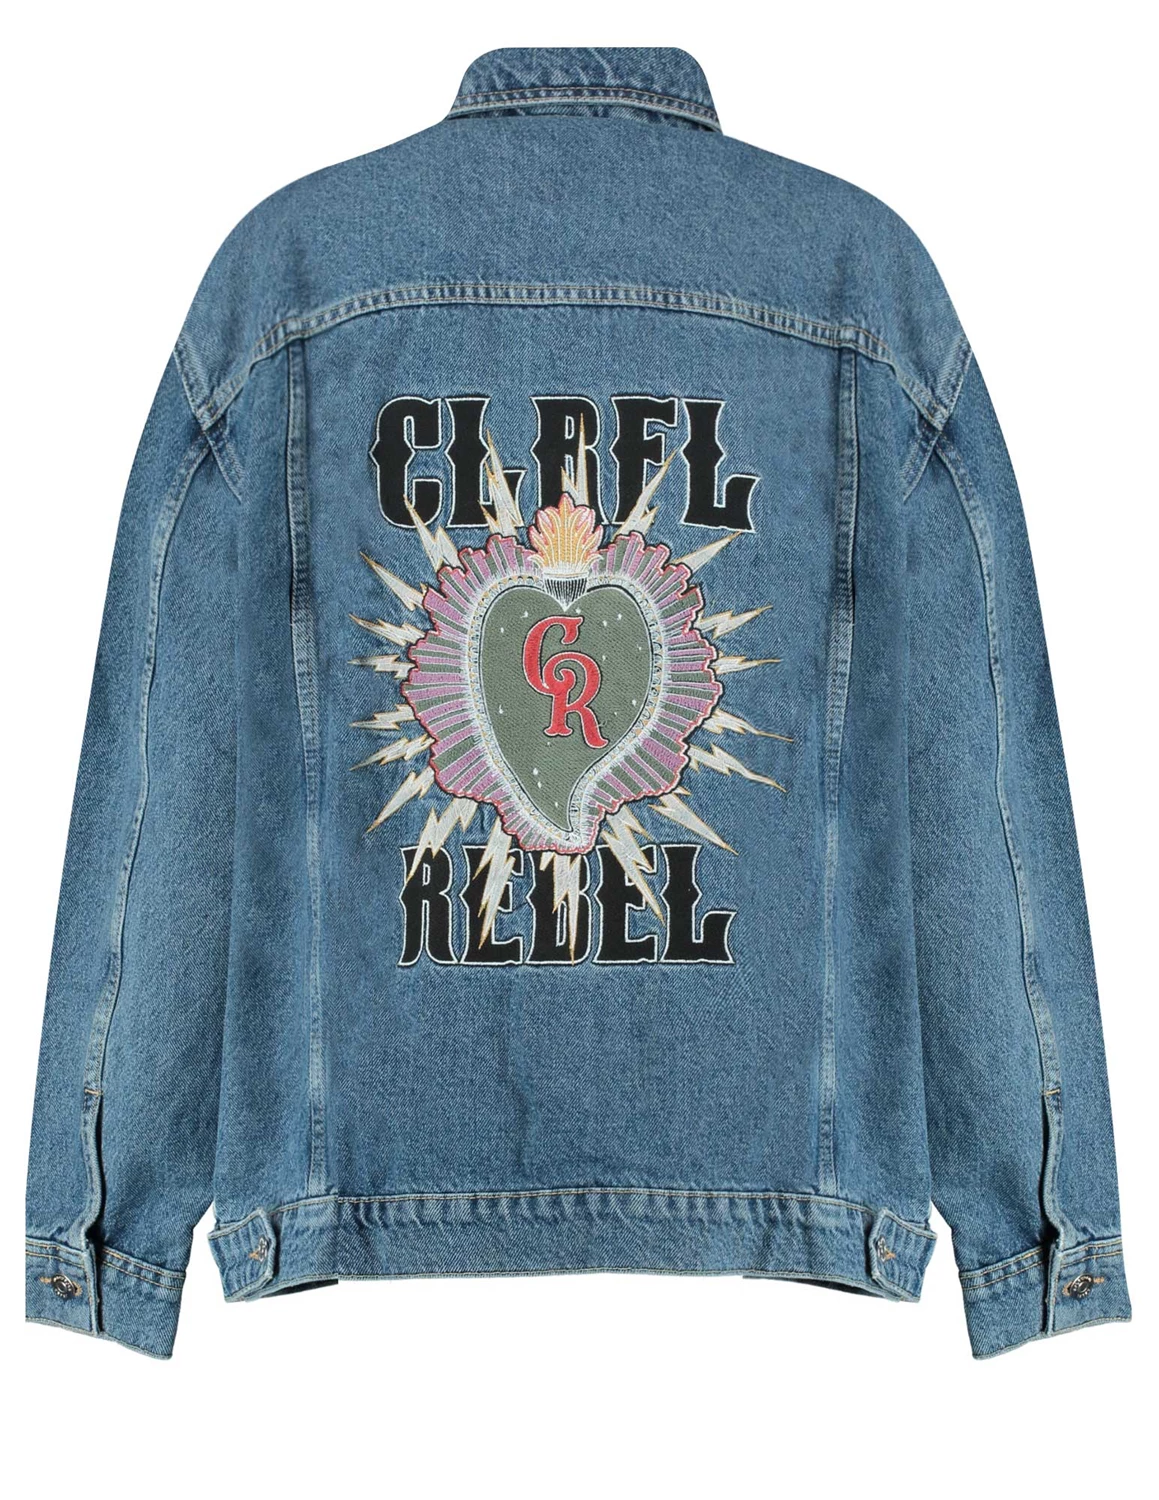 Darts zijn nog een keer Colourful Rebel Paige patch denim jacket WO114033 jeans blauw kopen bij The  Stone